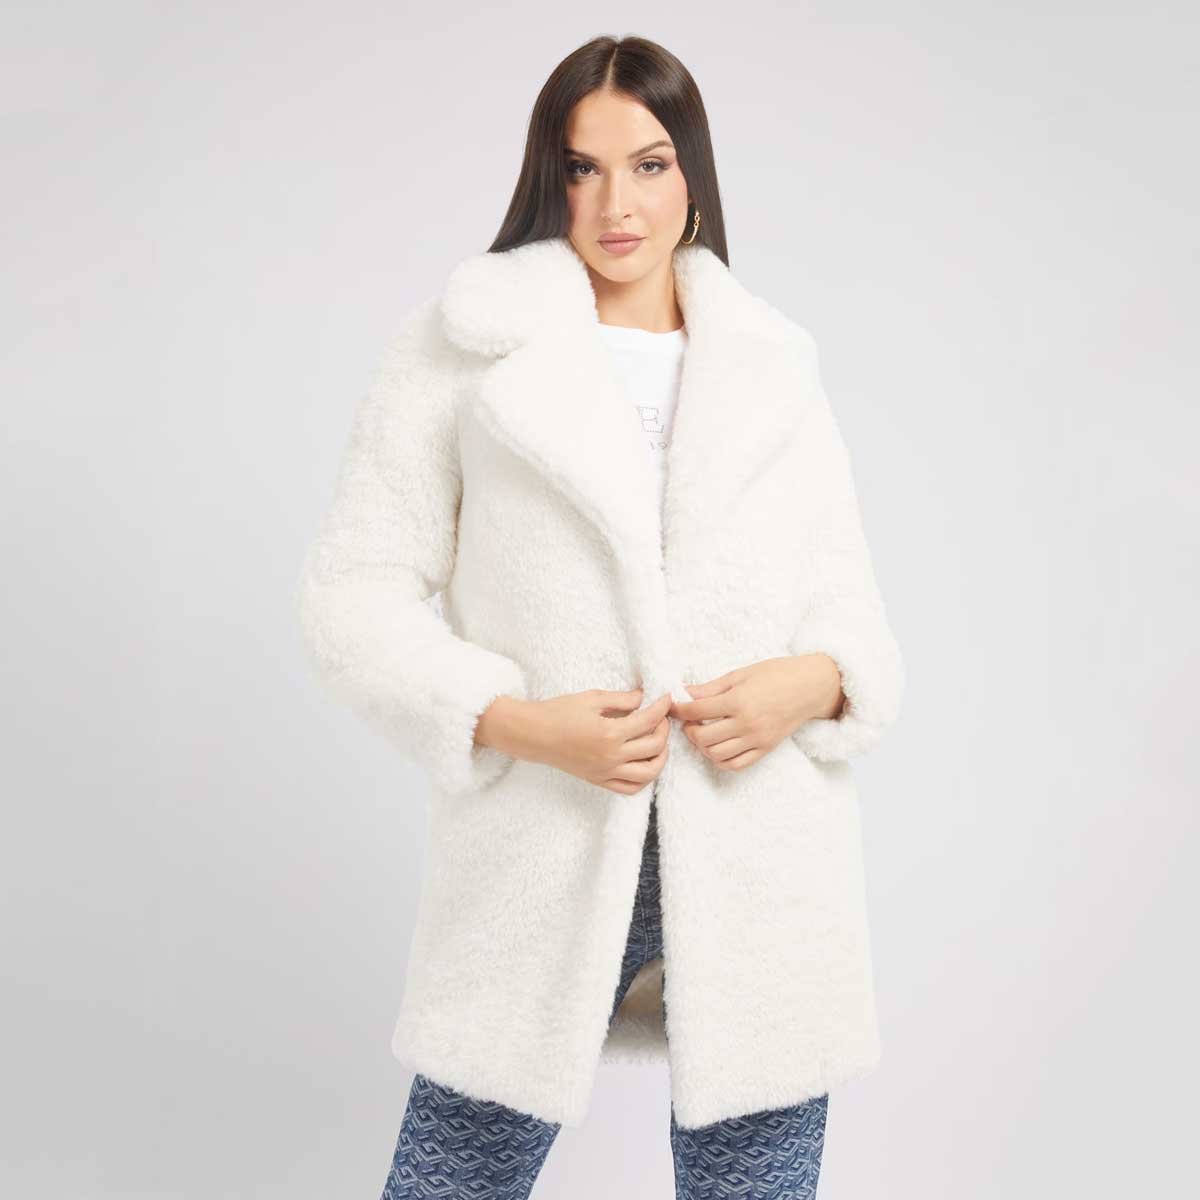 cappotti bianchi inverno 